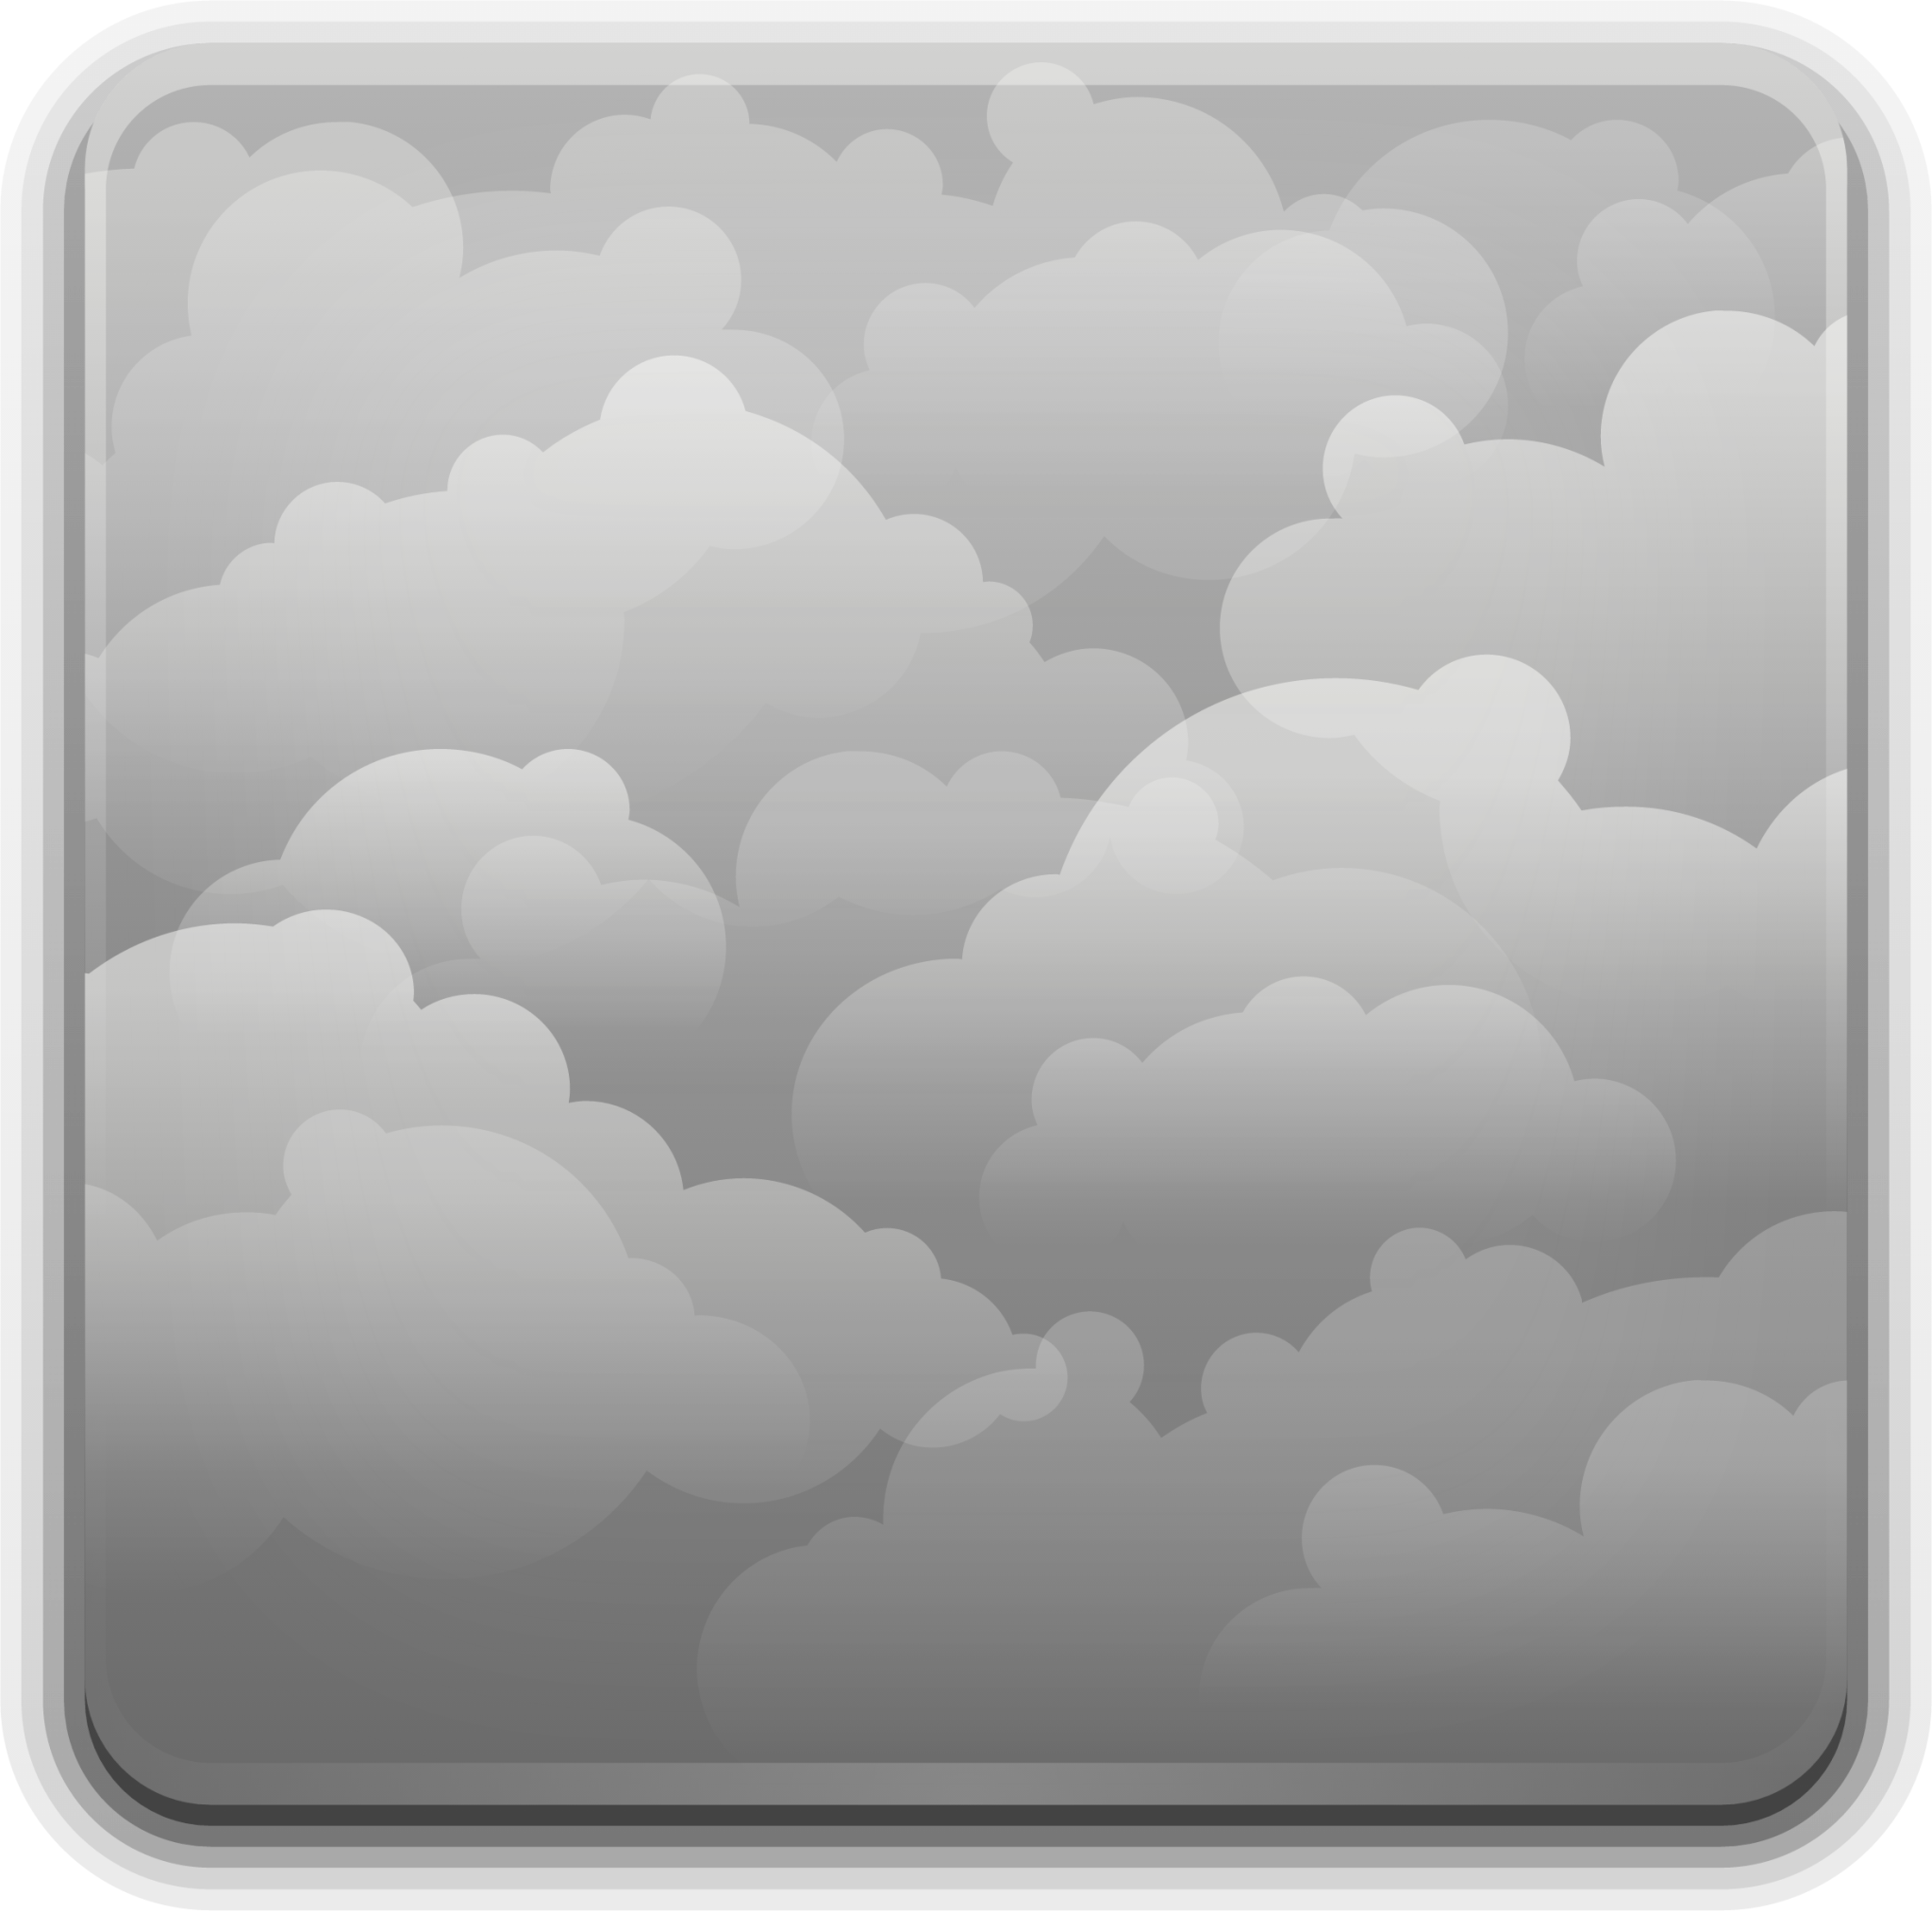 weather overcast icon